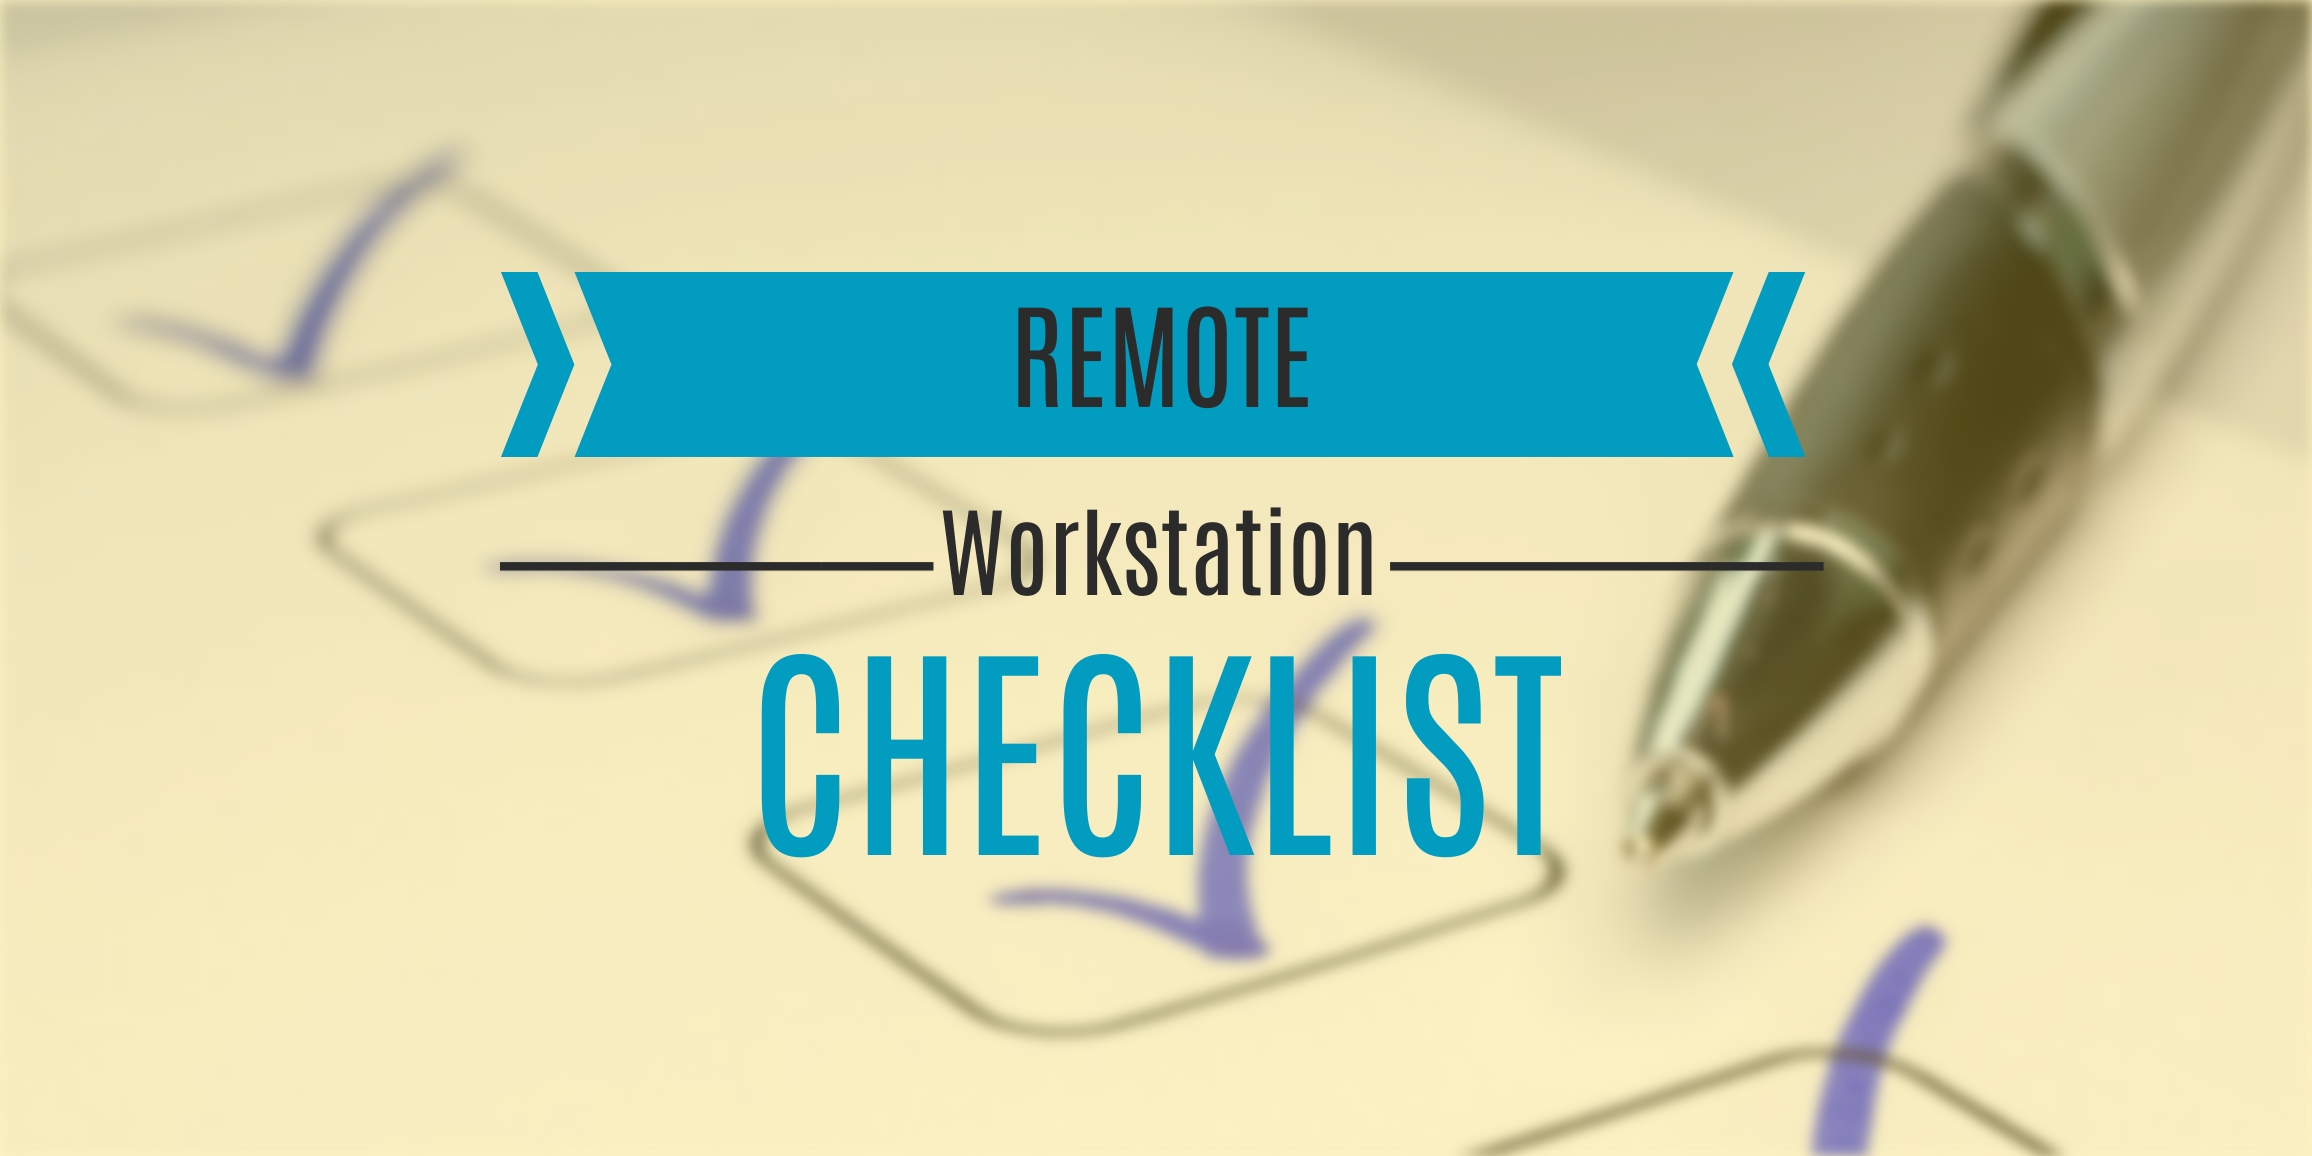 Remote workstation checklist header